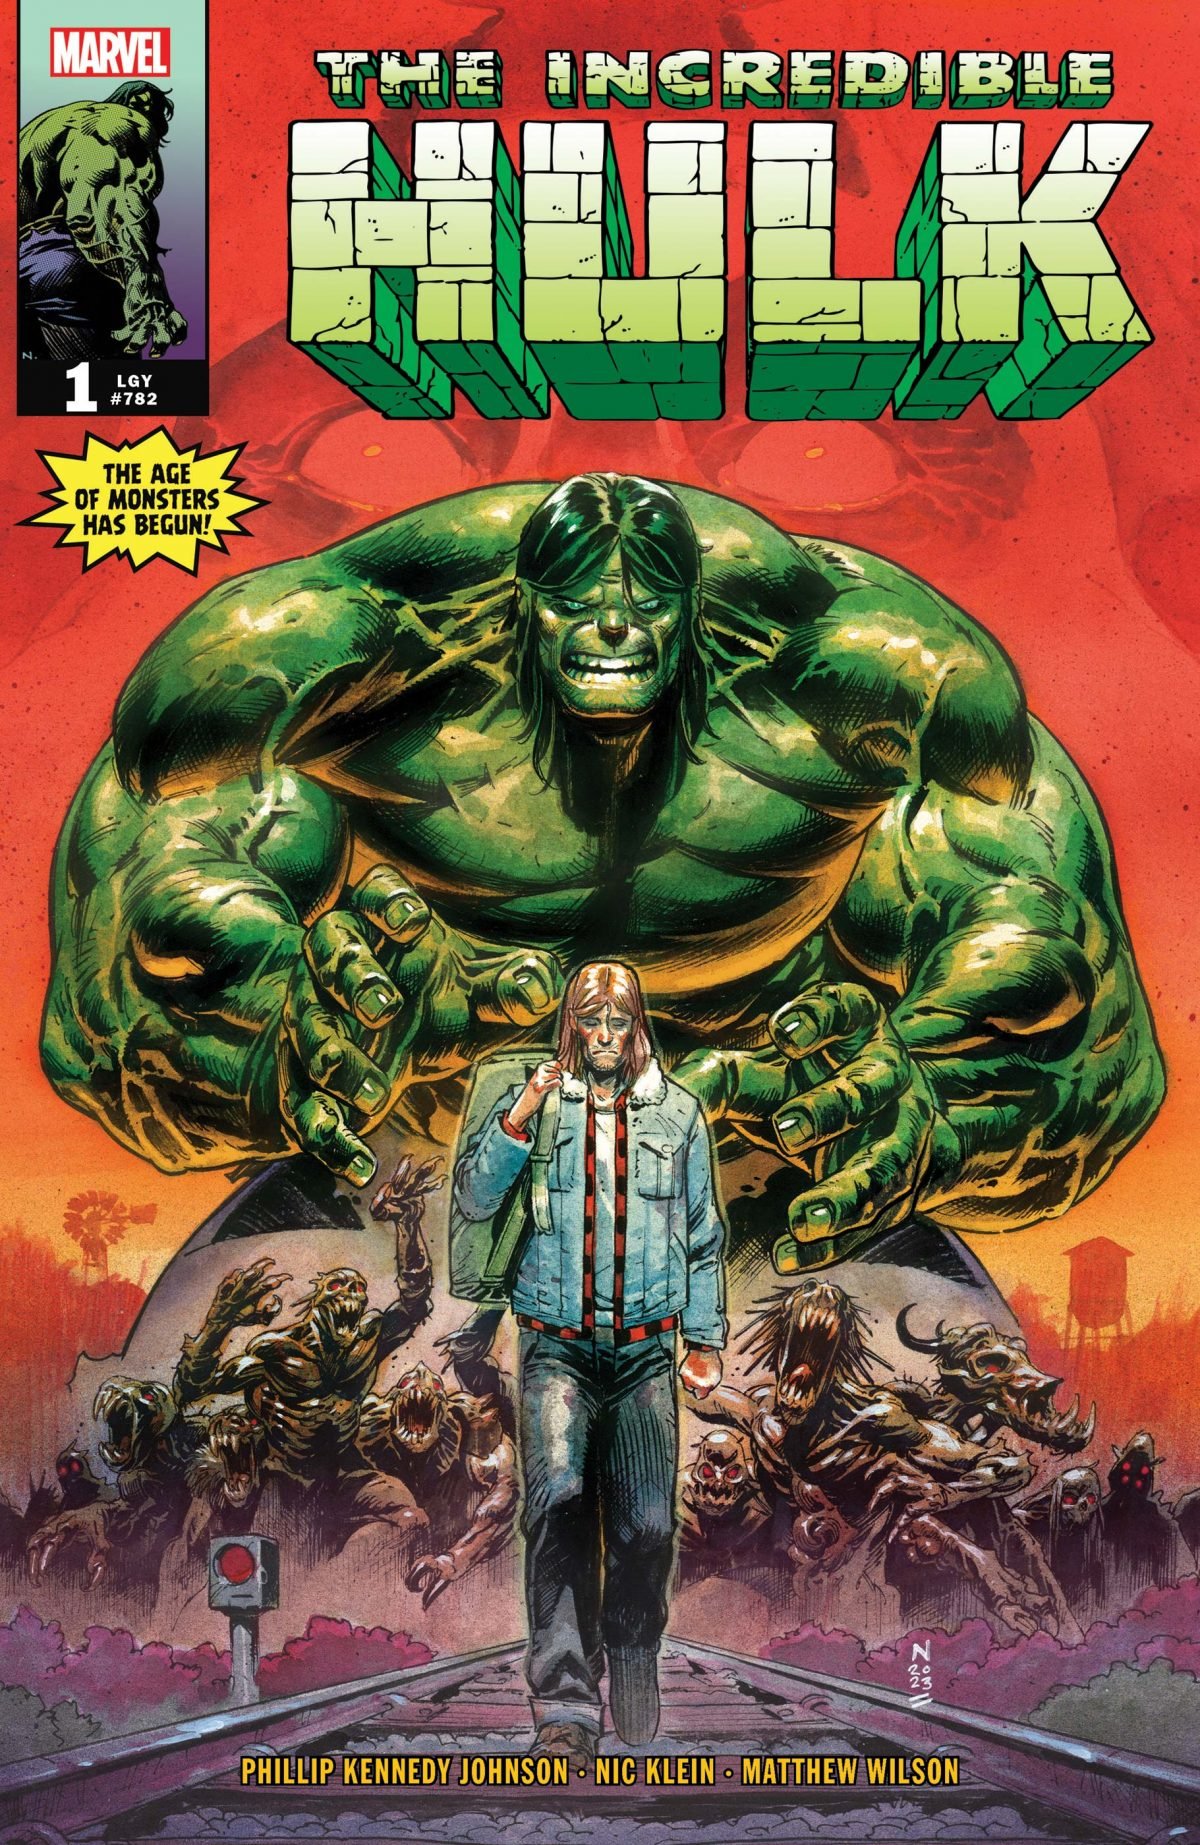 Incredible Hulk comic cover.